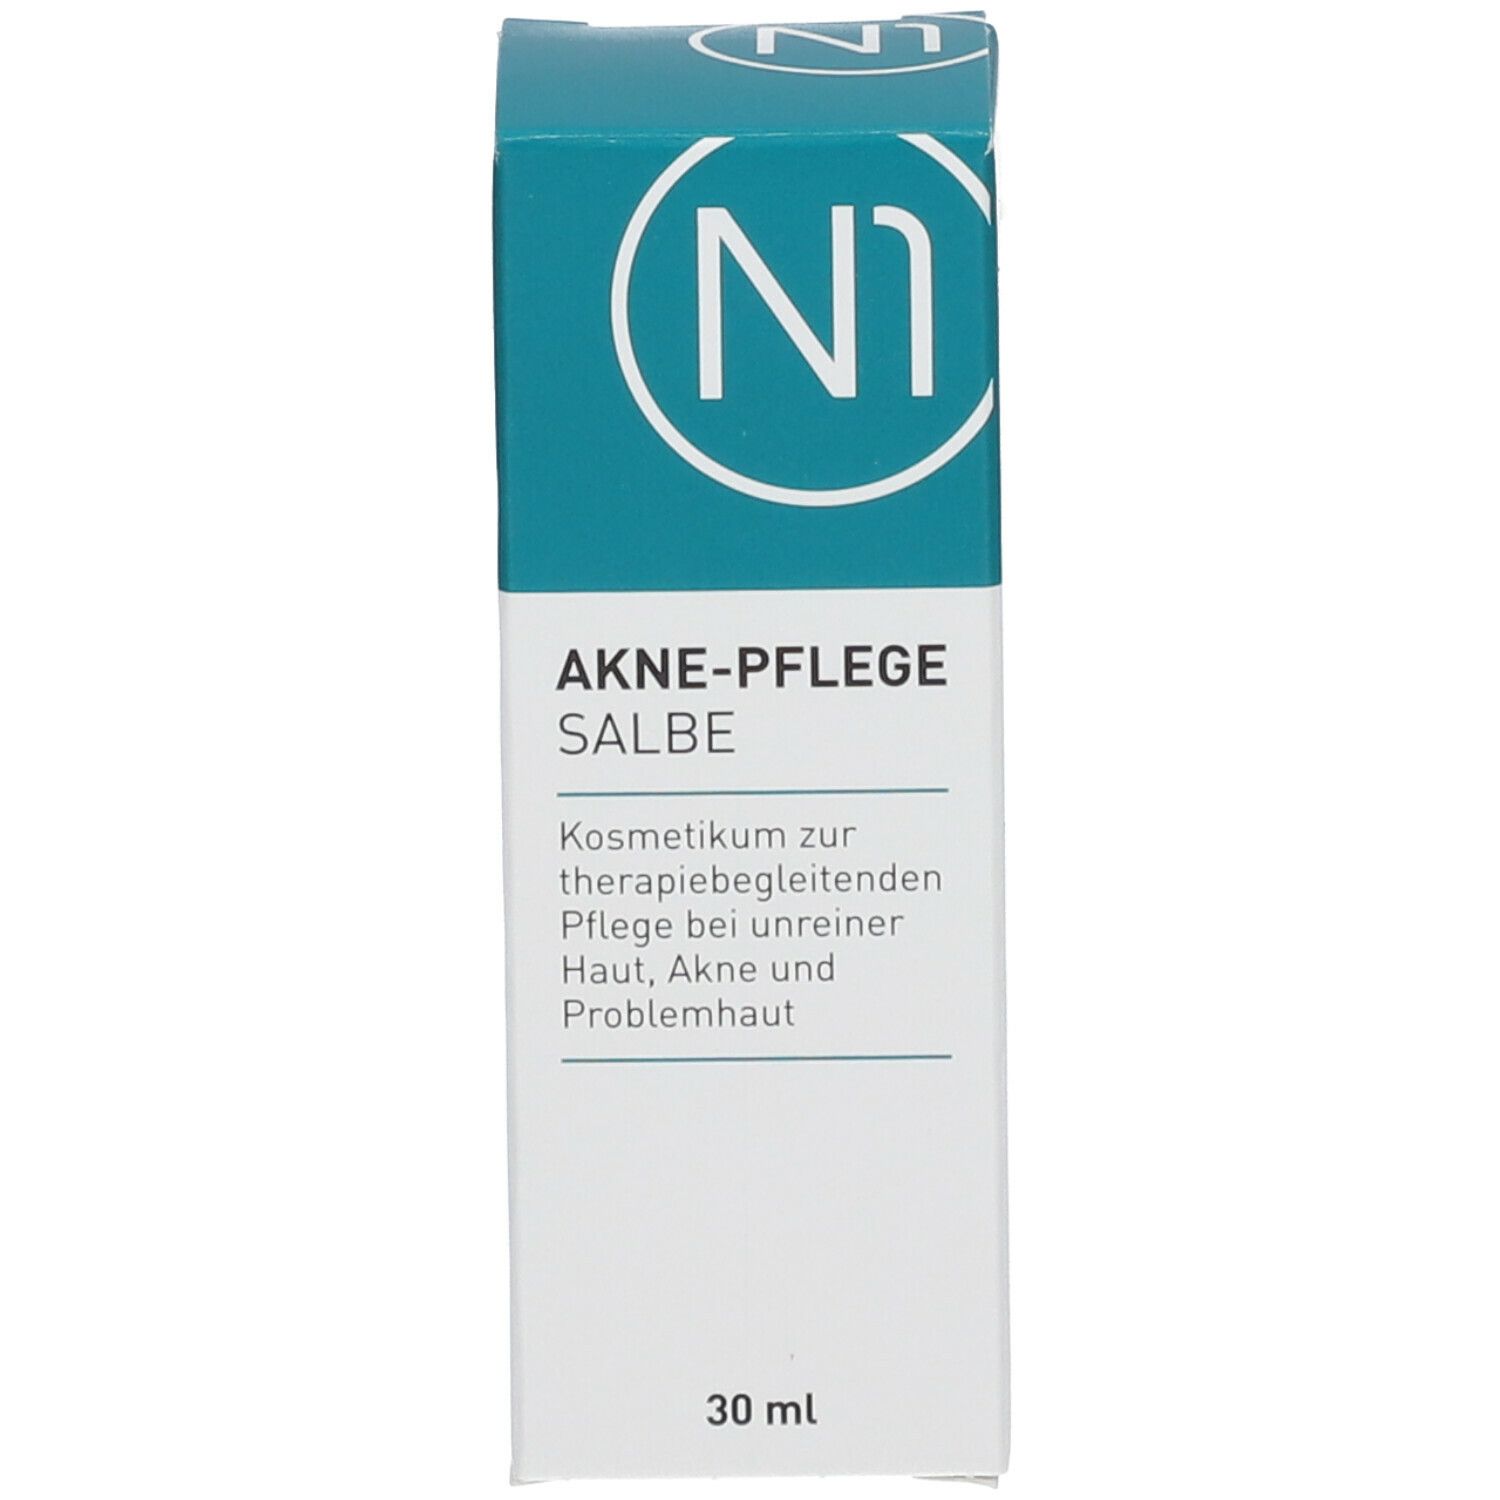 N1 AKNE-PFLEGE SALBE